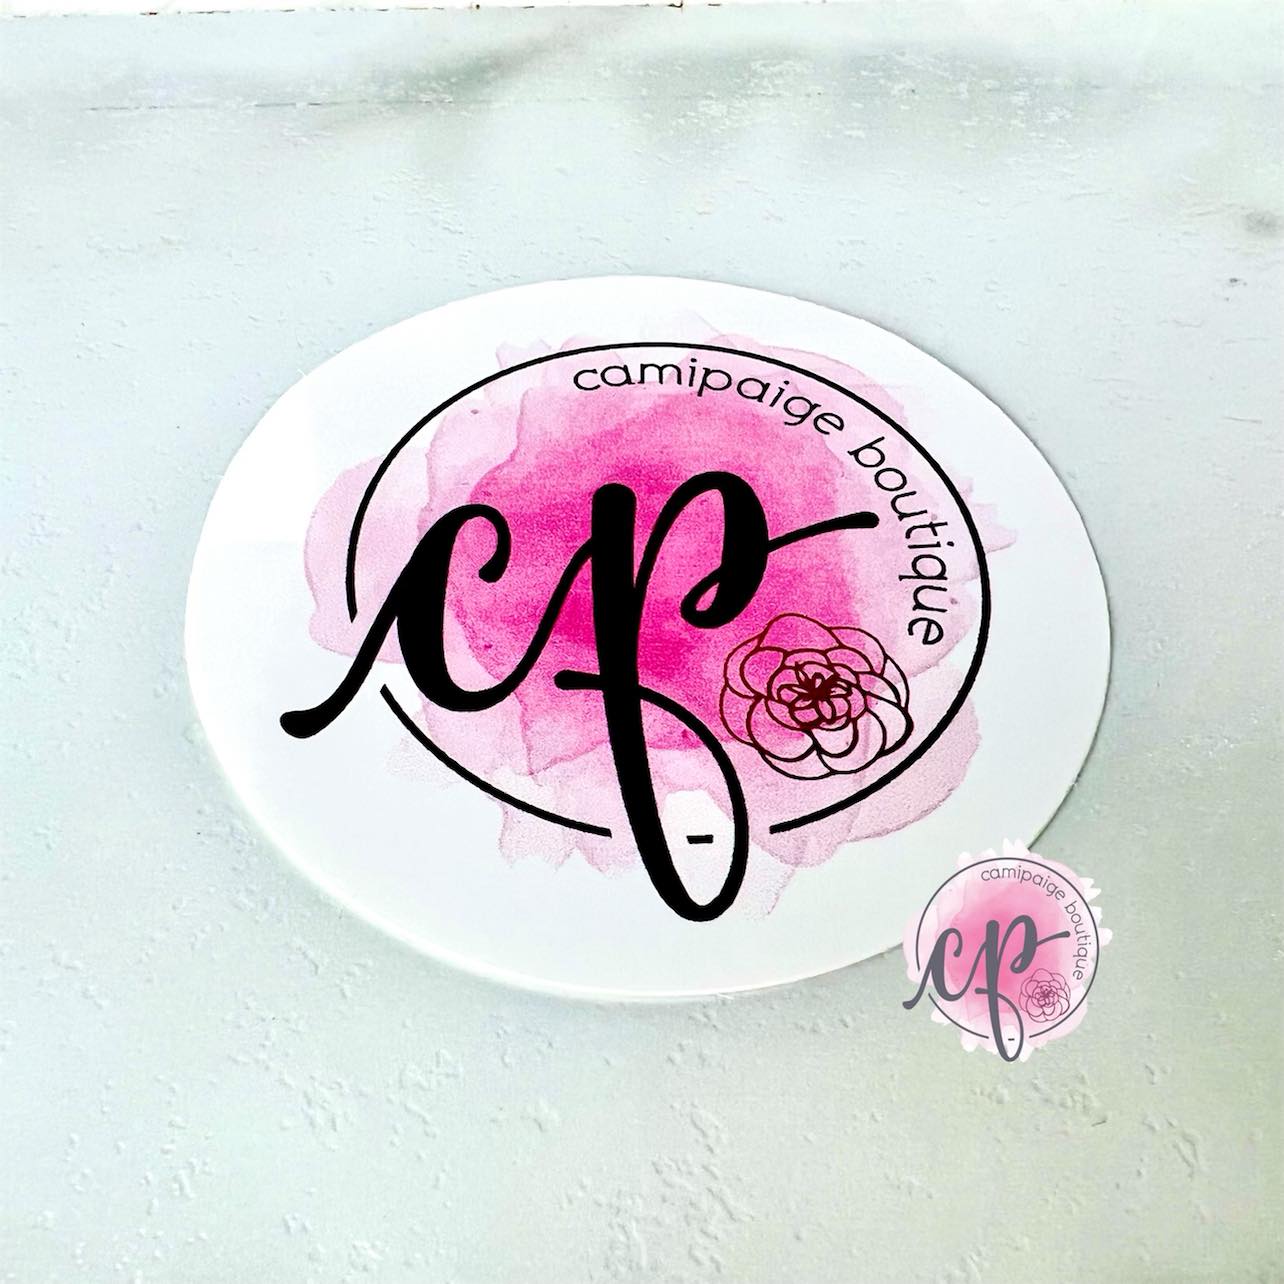 CamiPaige Boutique "CP" Sticker